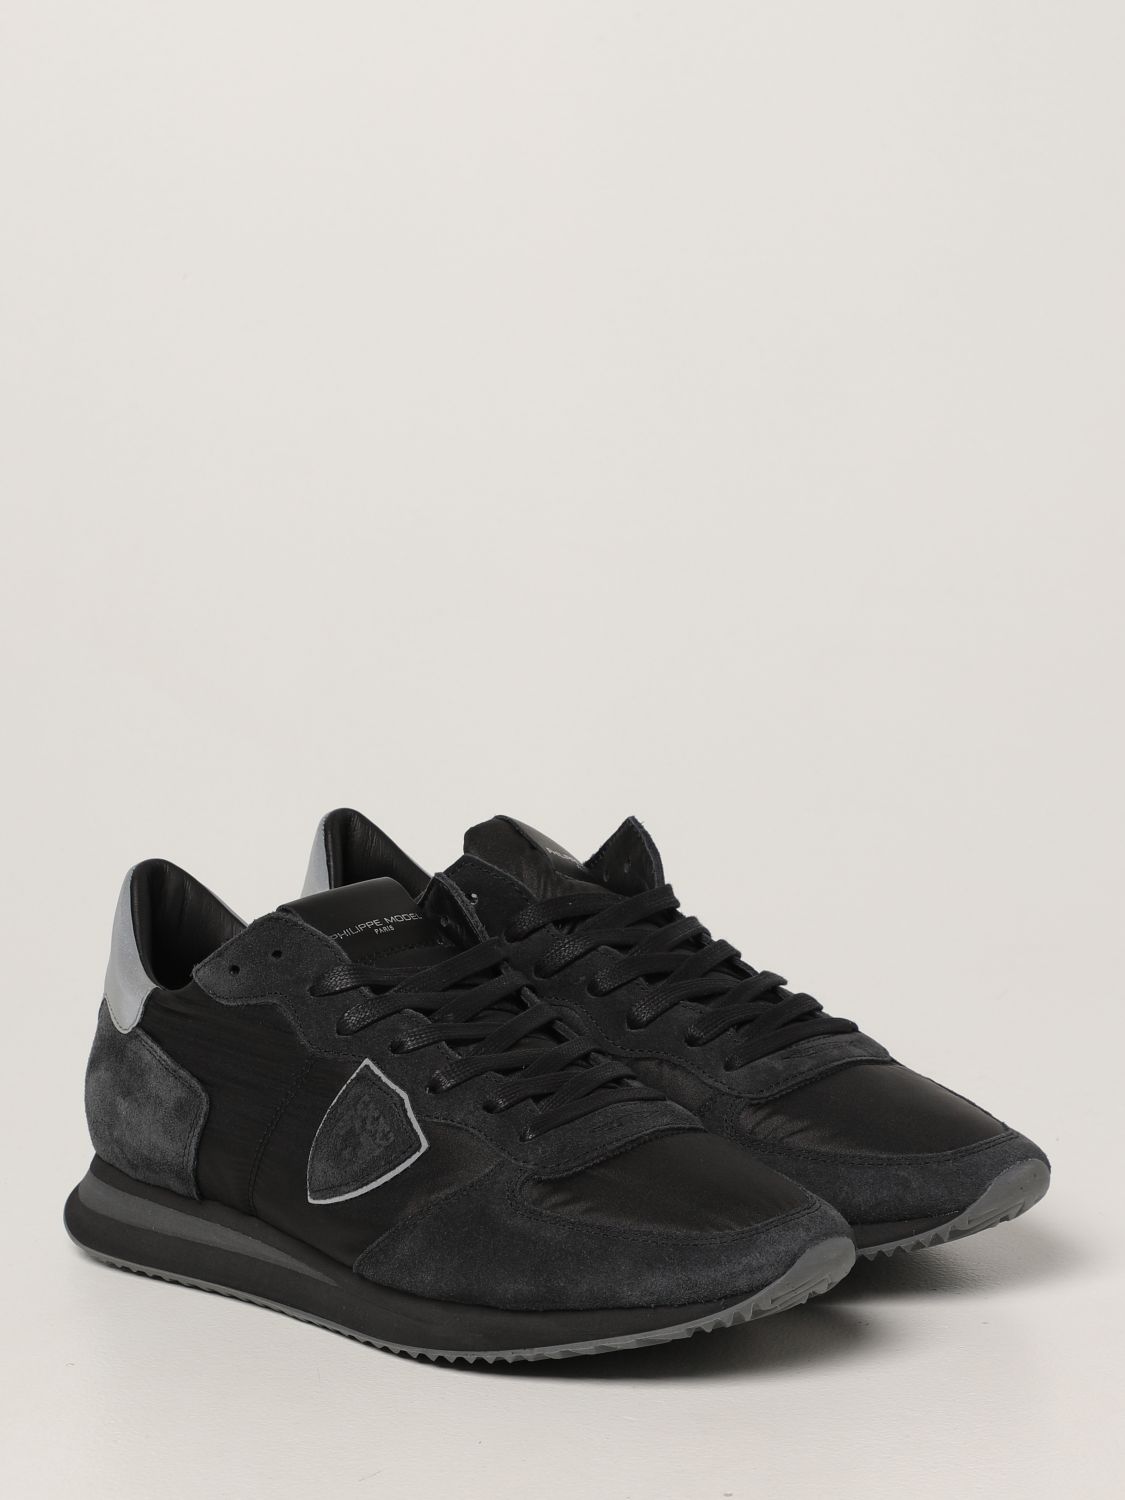 Sneakers Philippe Model: Sneakers Trpx Philippe Model in nylon e camoscio nero 2